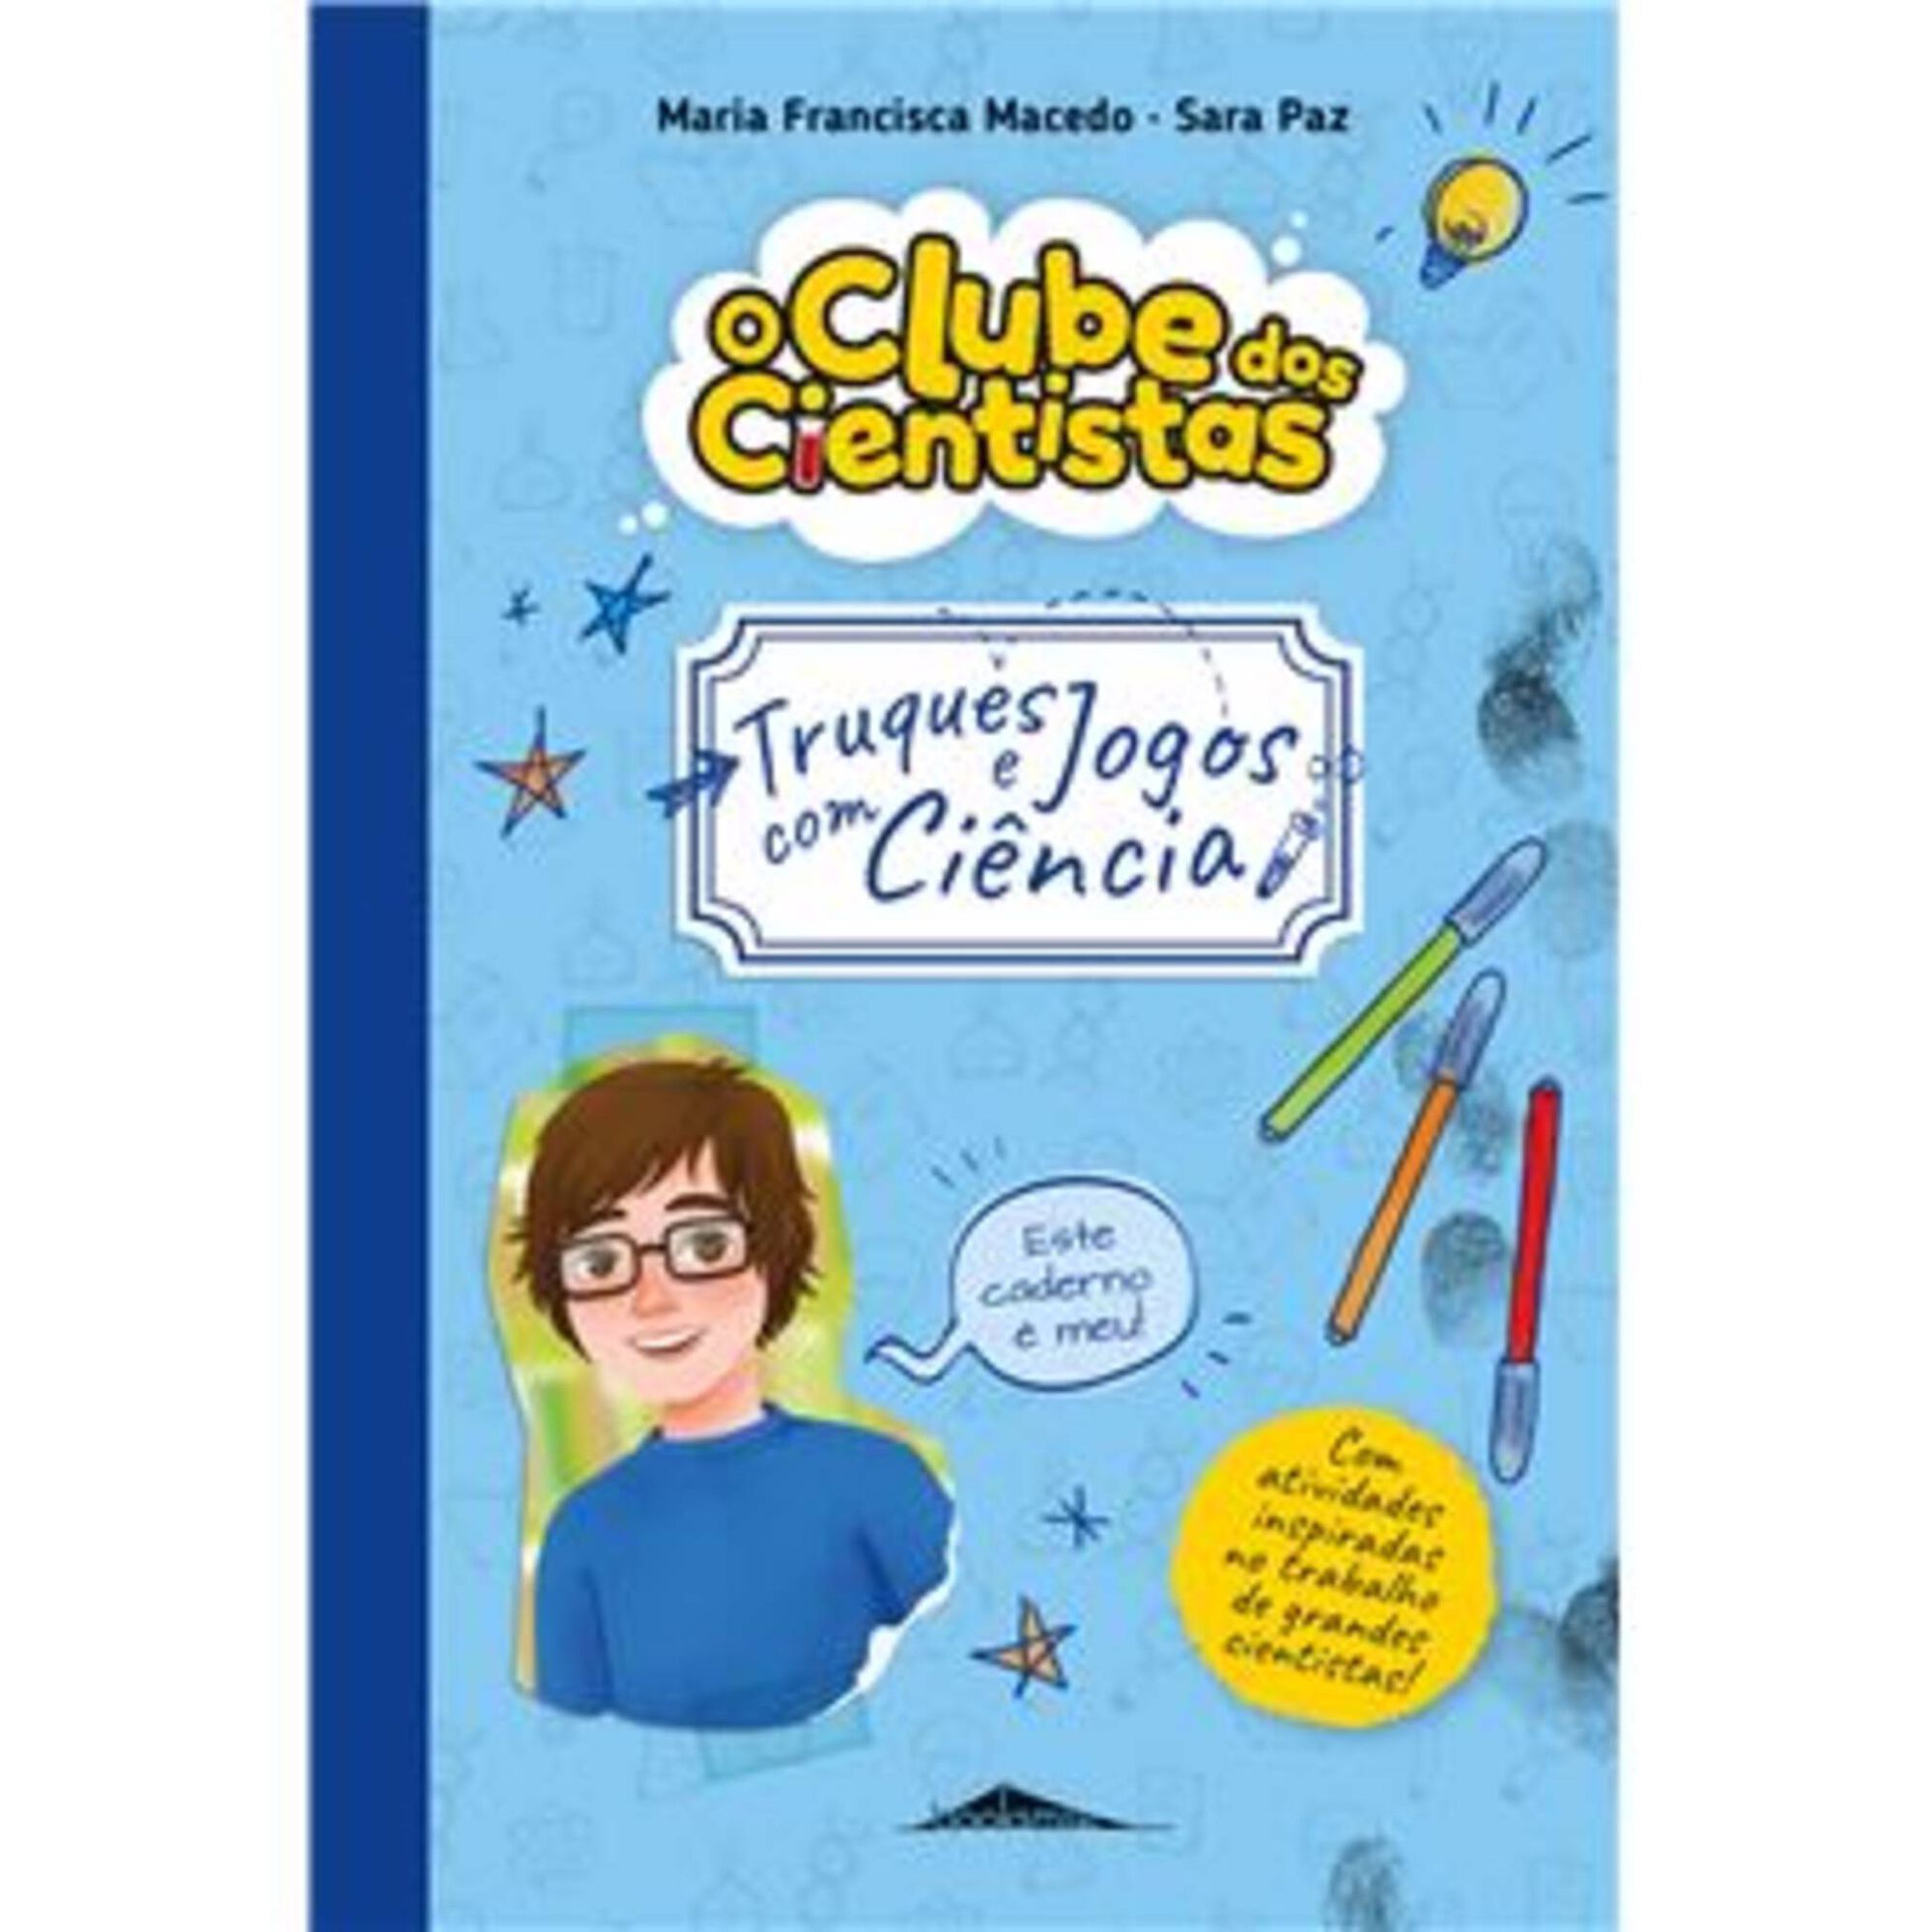 O Clube dos Cientistas - Caderno 3: Truques e Jogos com Ciência